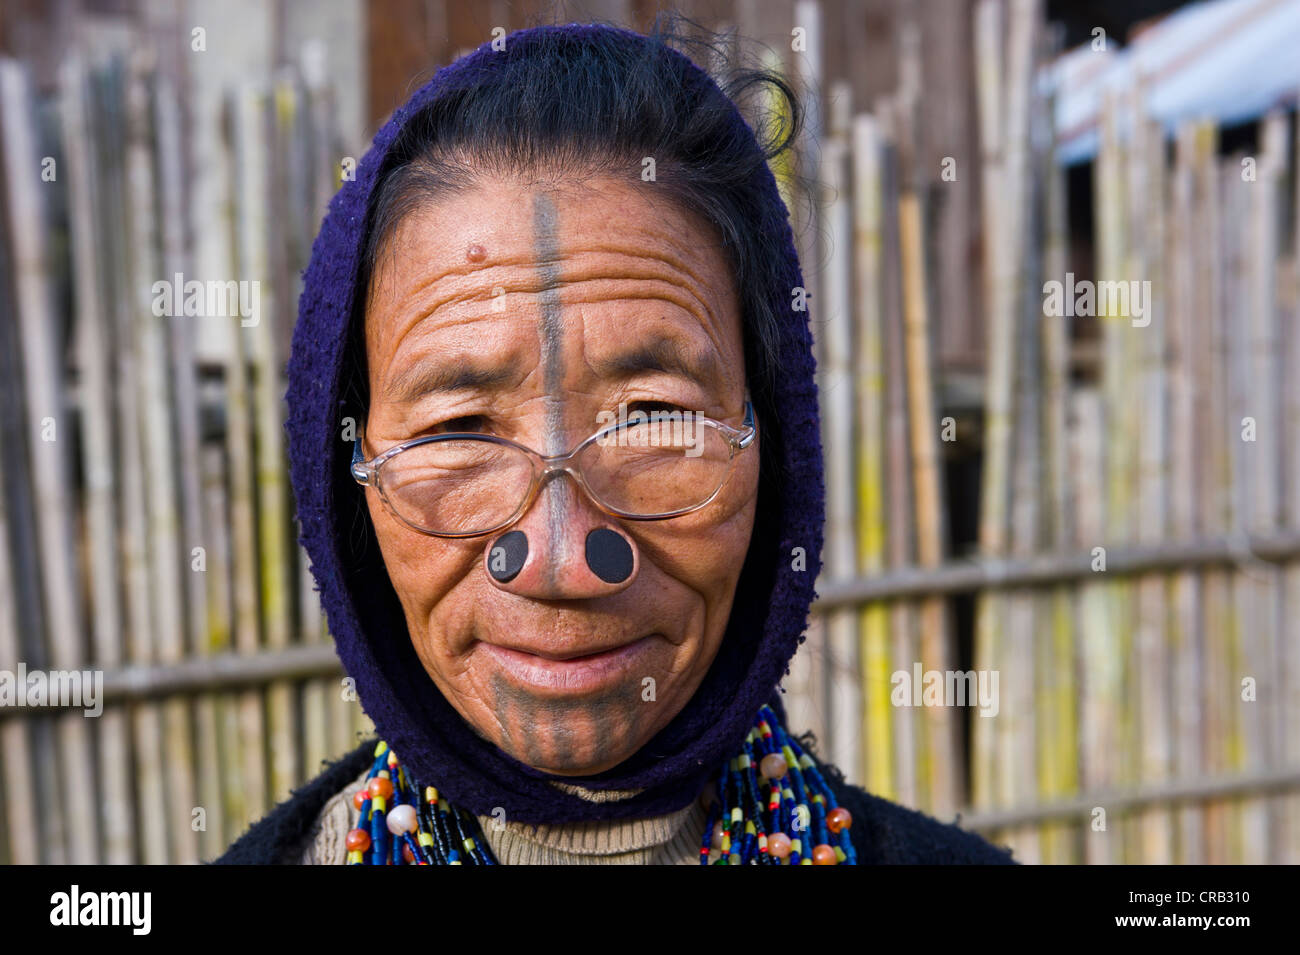 Ältere Frau der Volksgruppe Apatani, bekannt für die Holzstücke in ihre Nase zu Rivalen weniger attraktiv machen Stockfoto